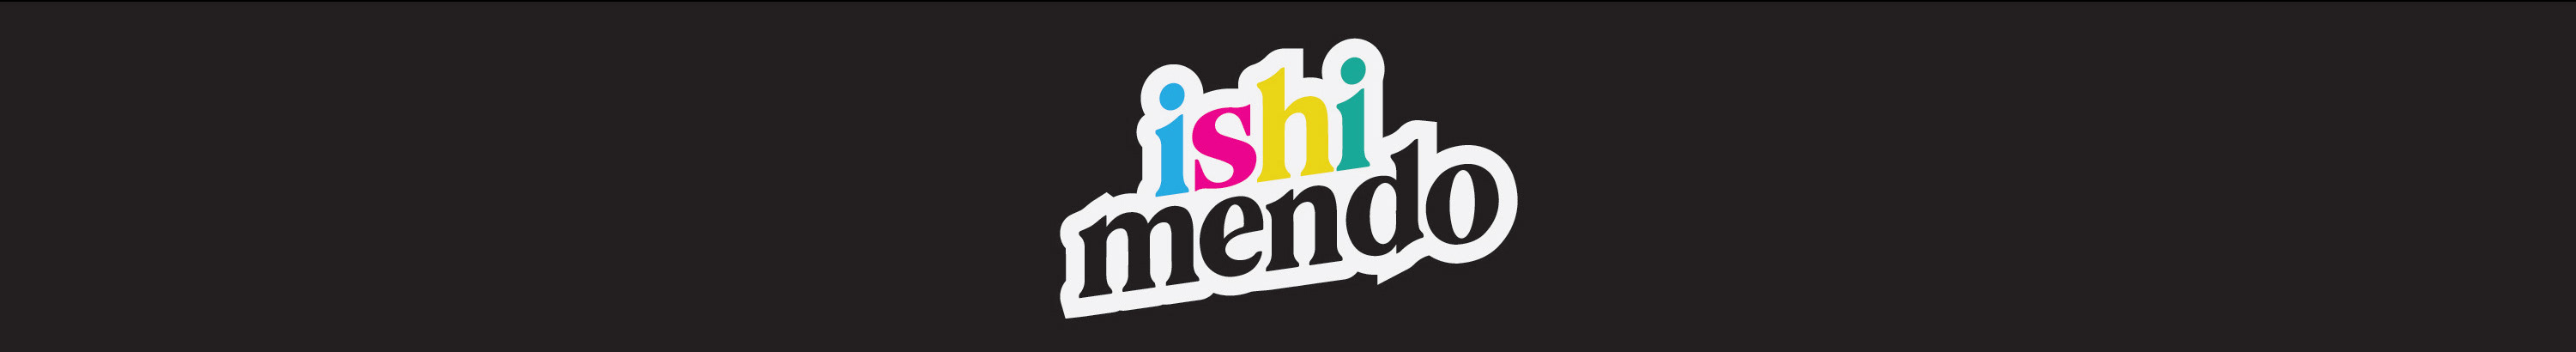 Ishi Mendo(za)'s profile banner